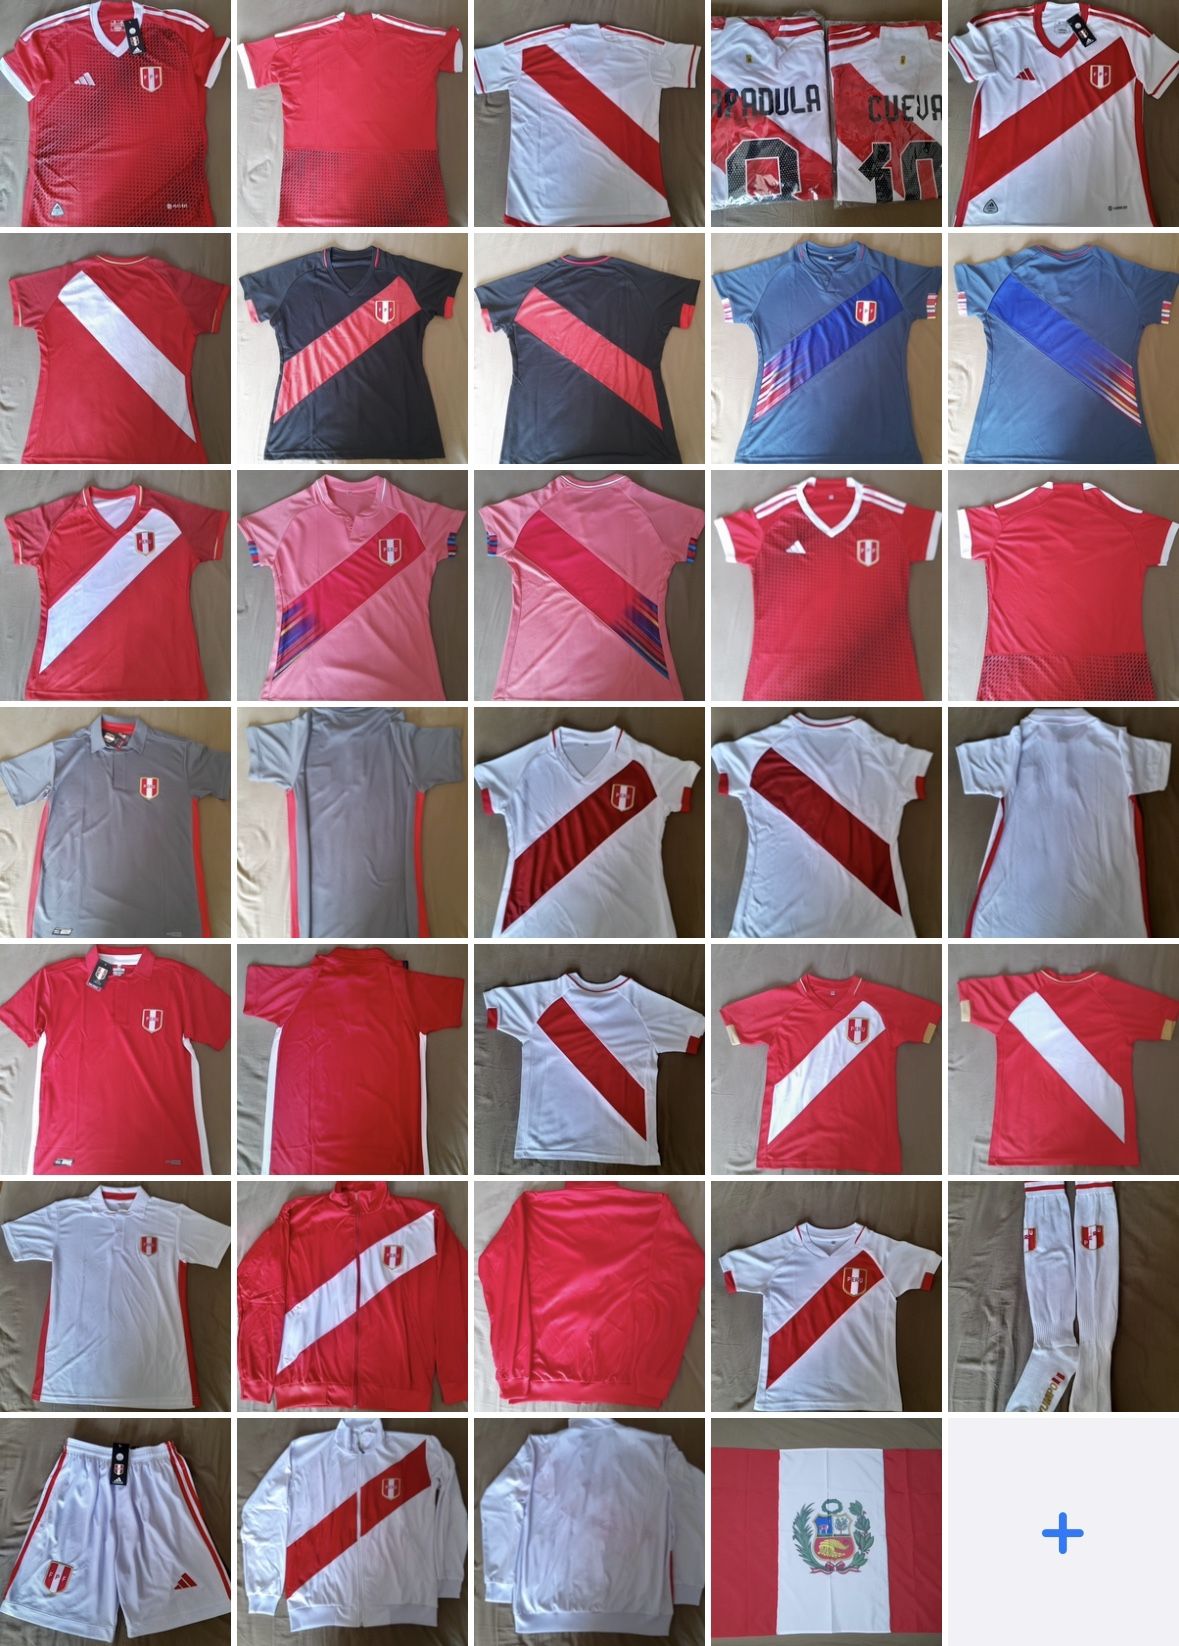 Adidas Peru Jerseys / Camisetas Peruanas Adidas